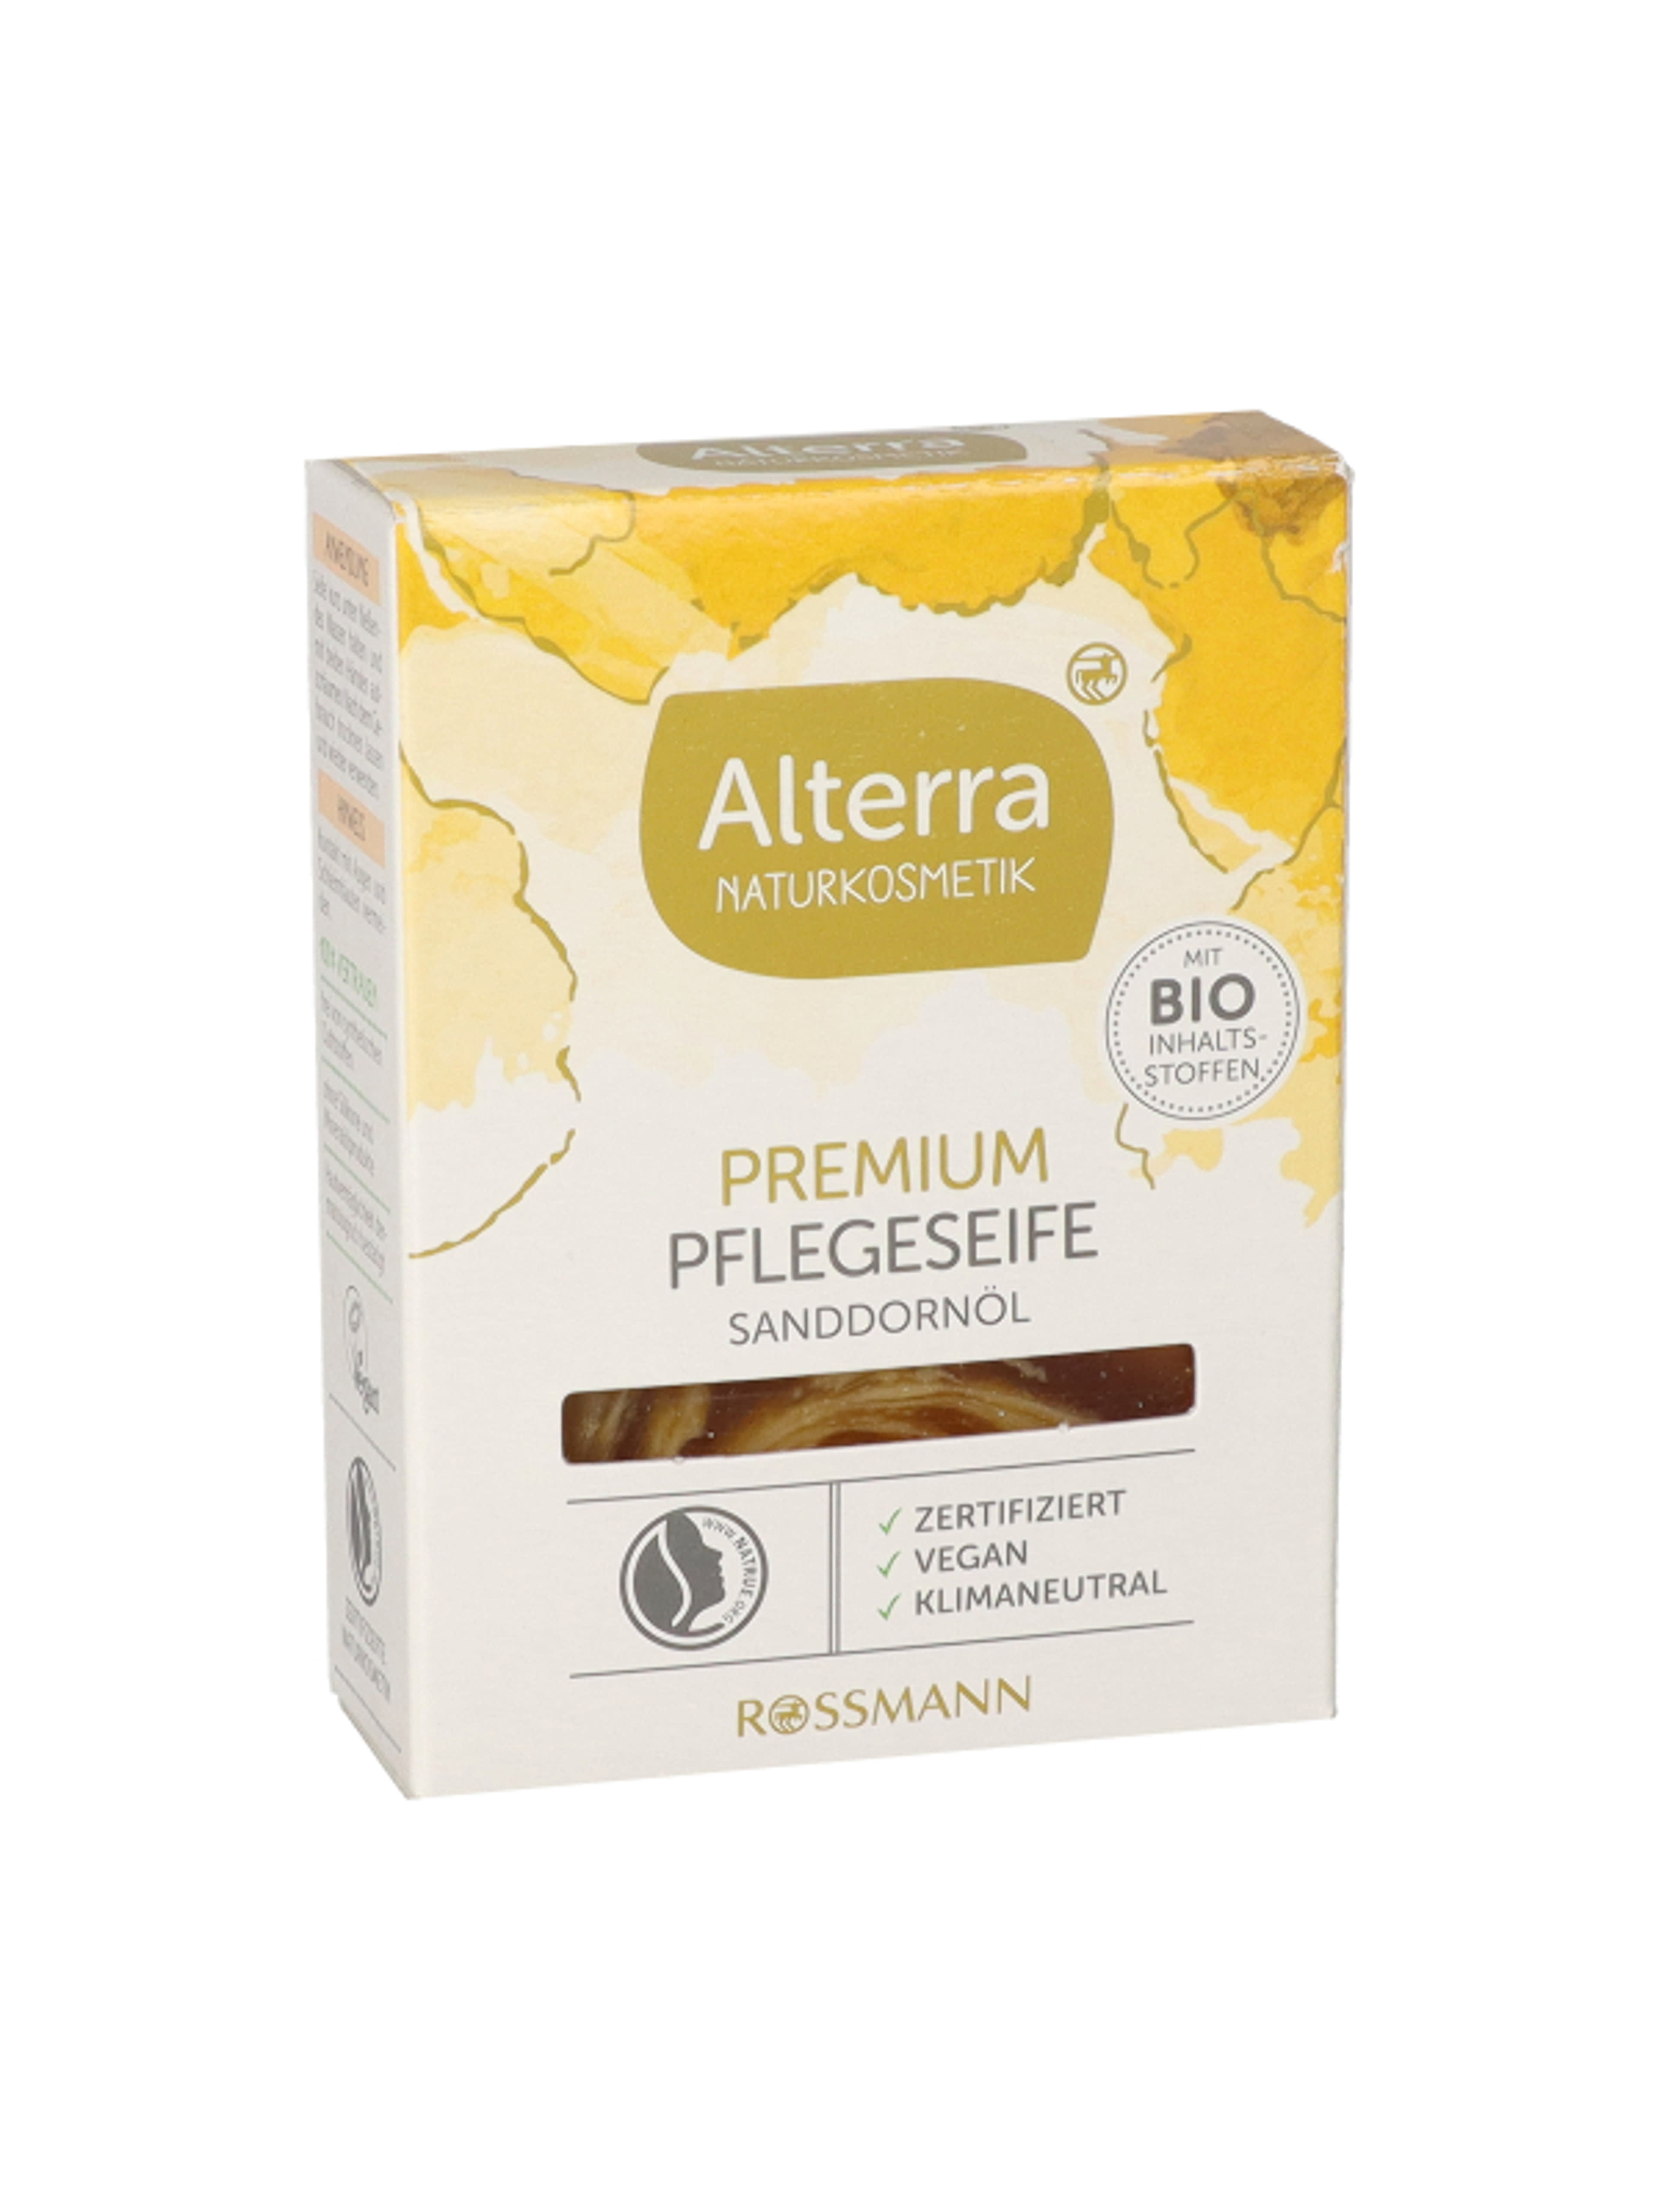 Alterra Naturkosmetik Premium ápoló szappan - 1 db-3